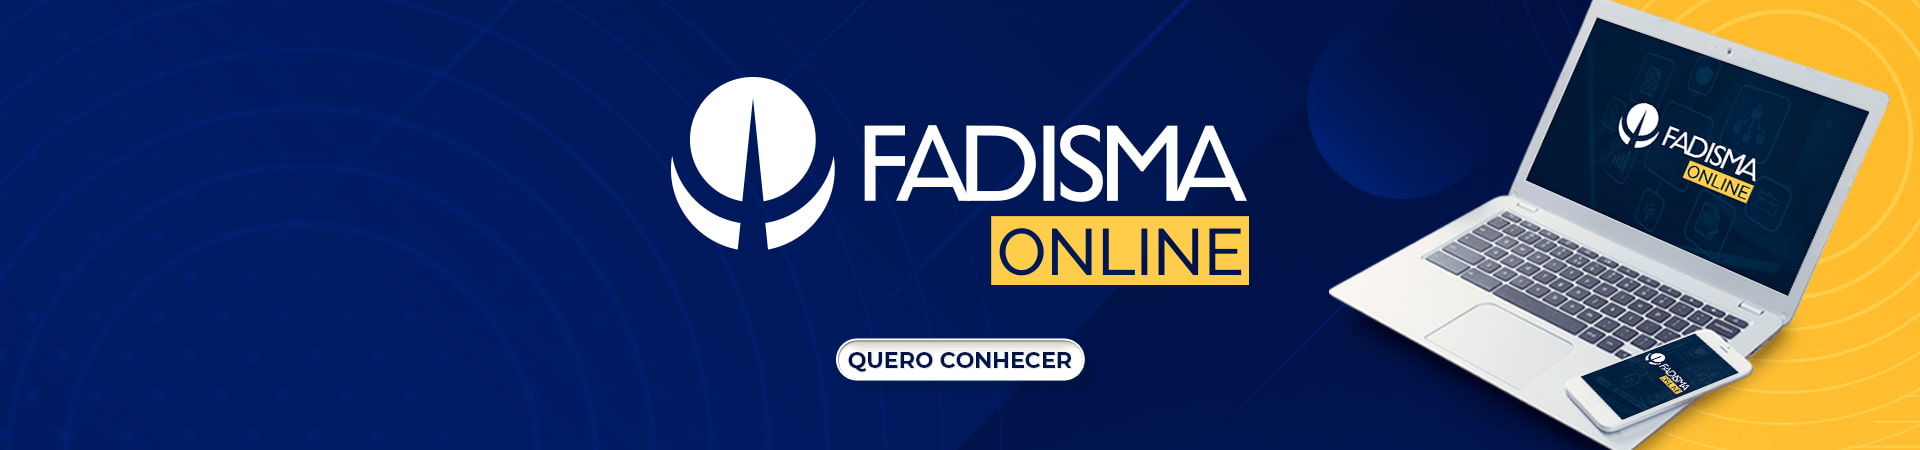 FADISMA Online